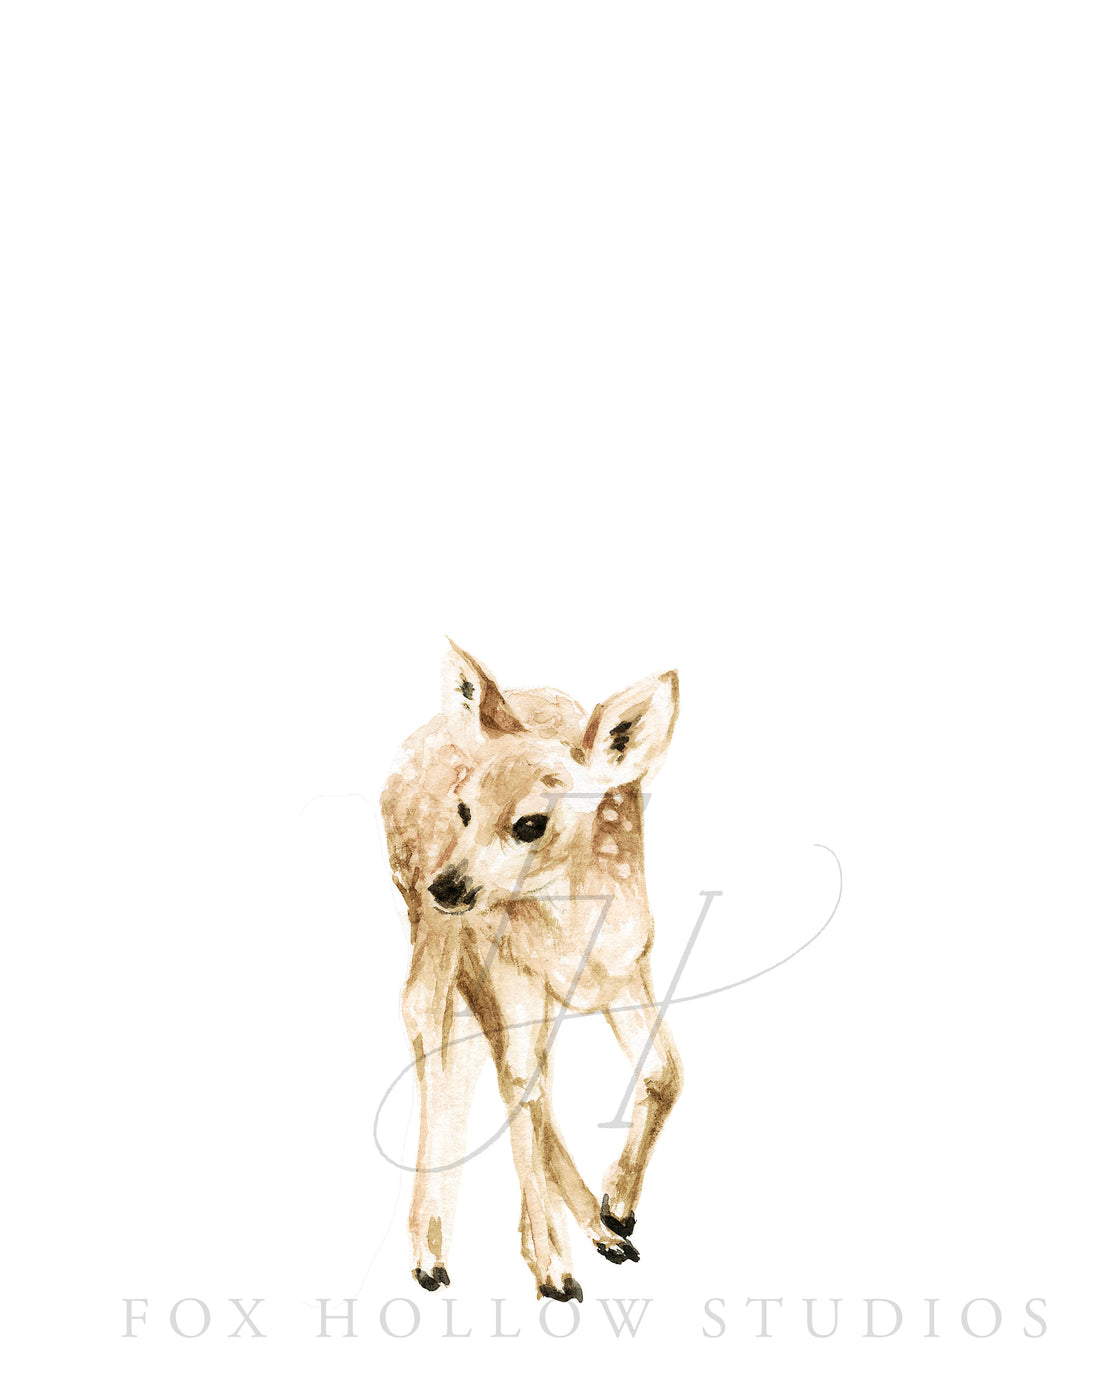 Standing Deer Art Print